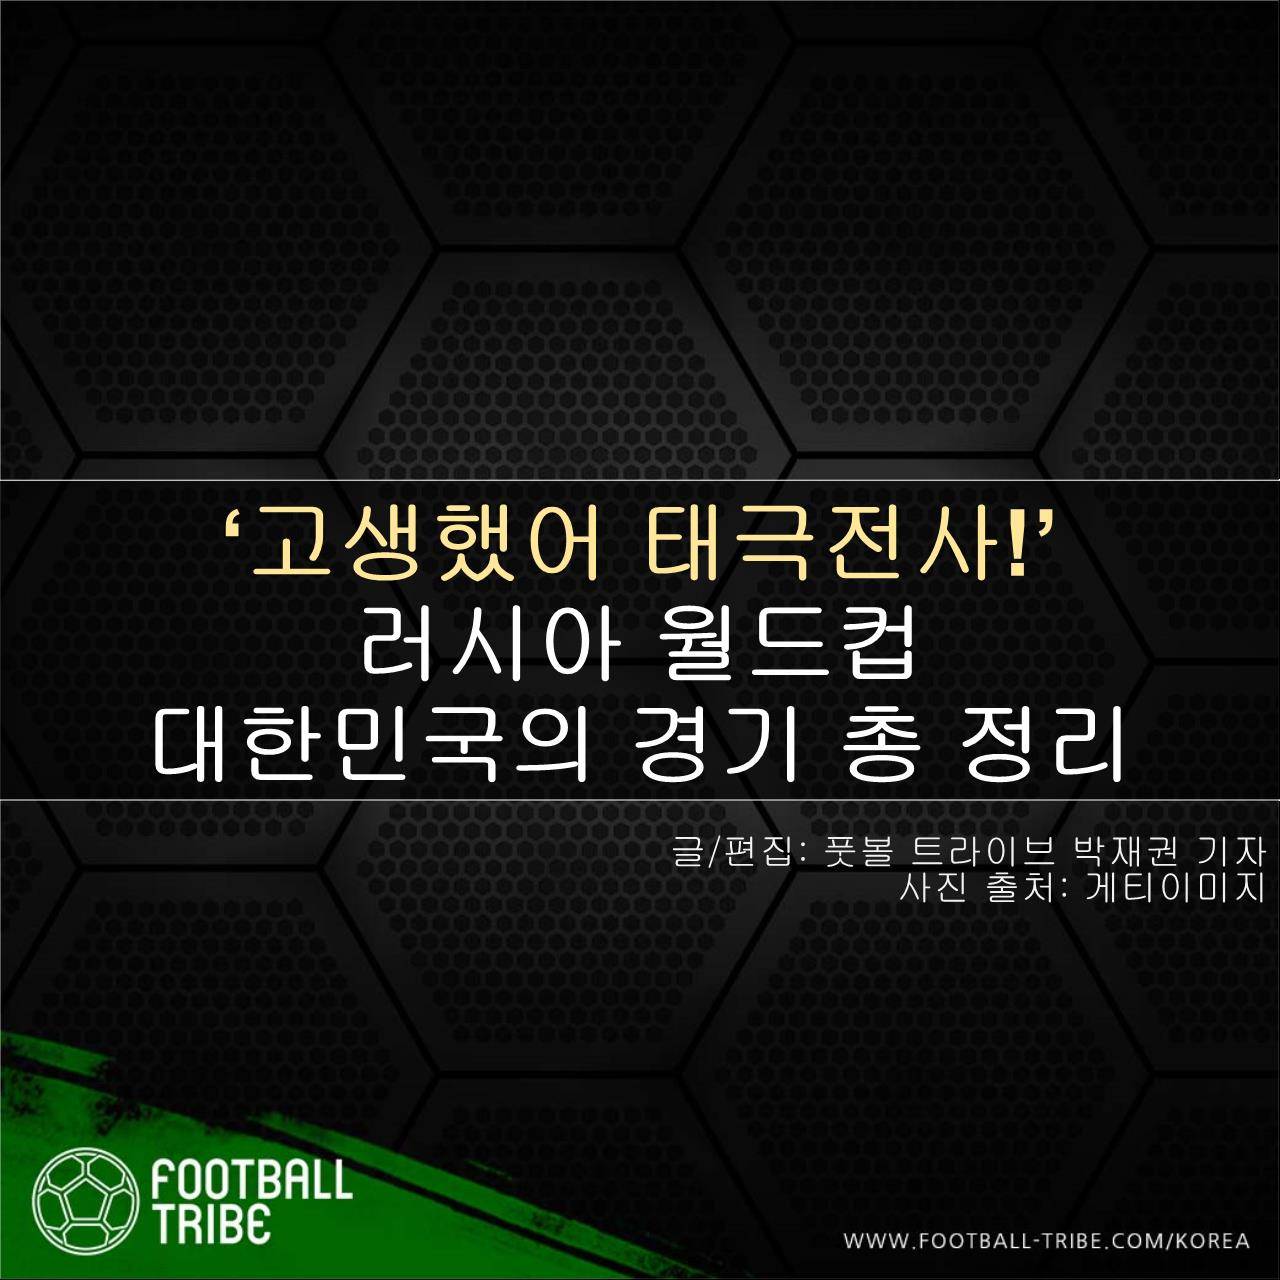 [카드 뉴스] ‘고생했어 태극전사!’ 대한민국 월드컵 결산